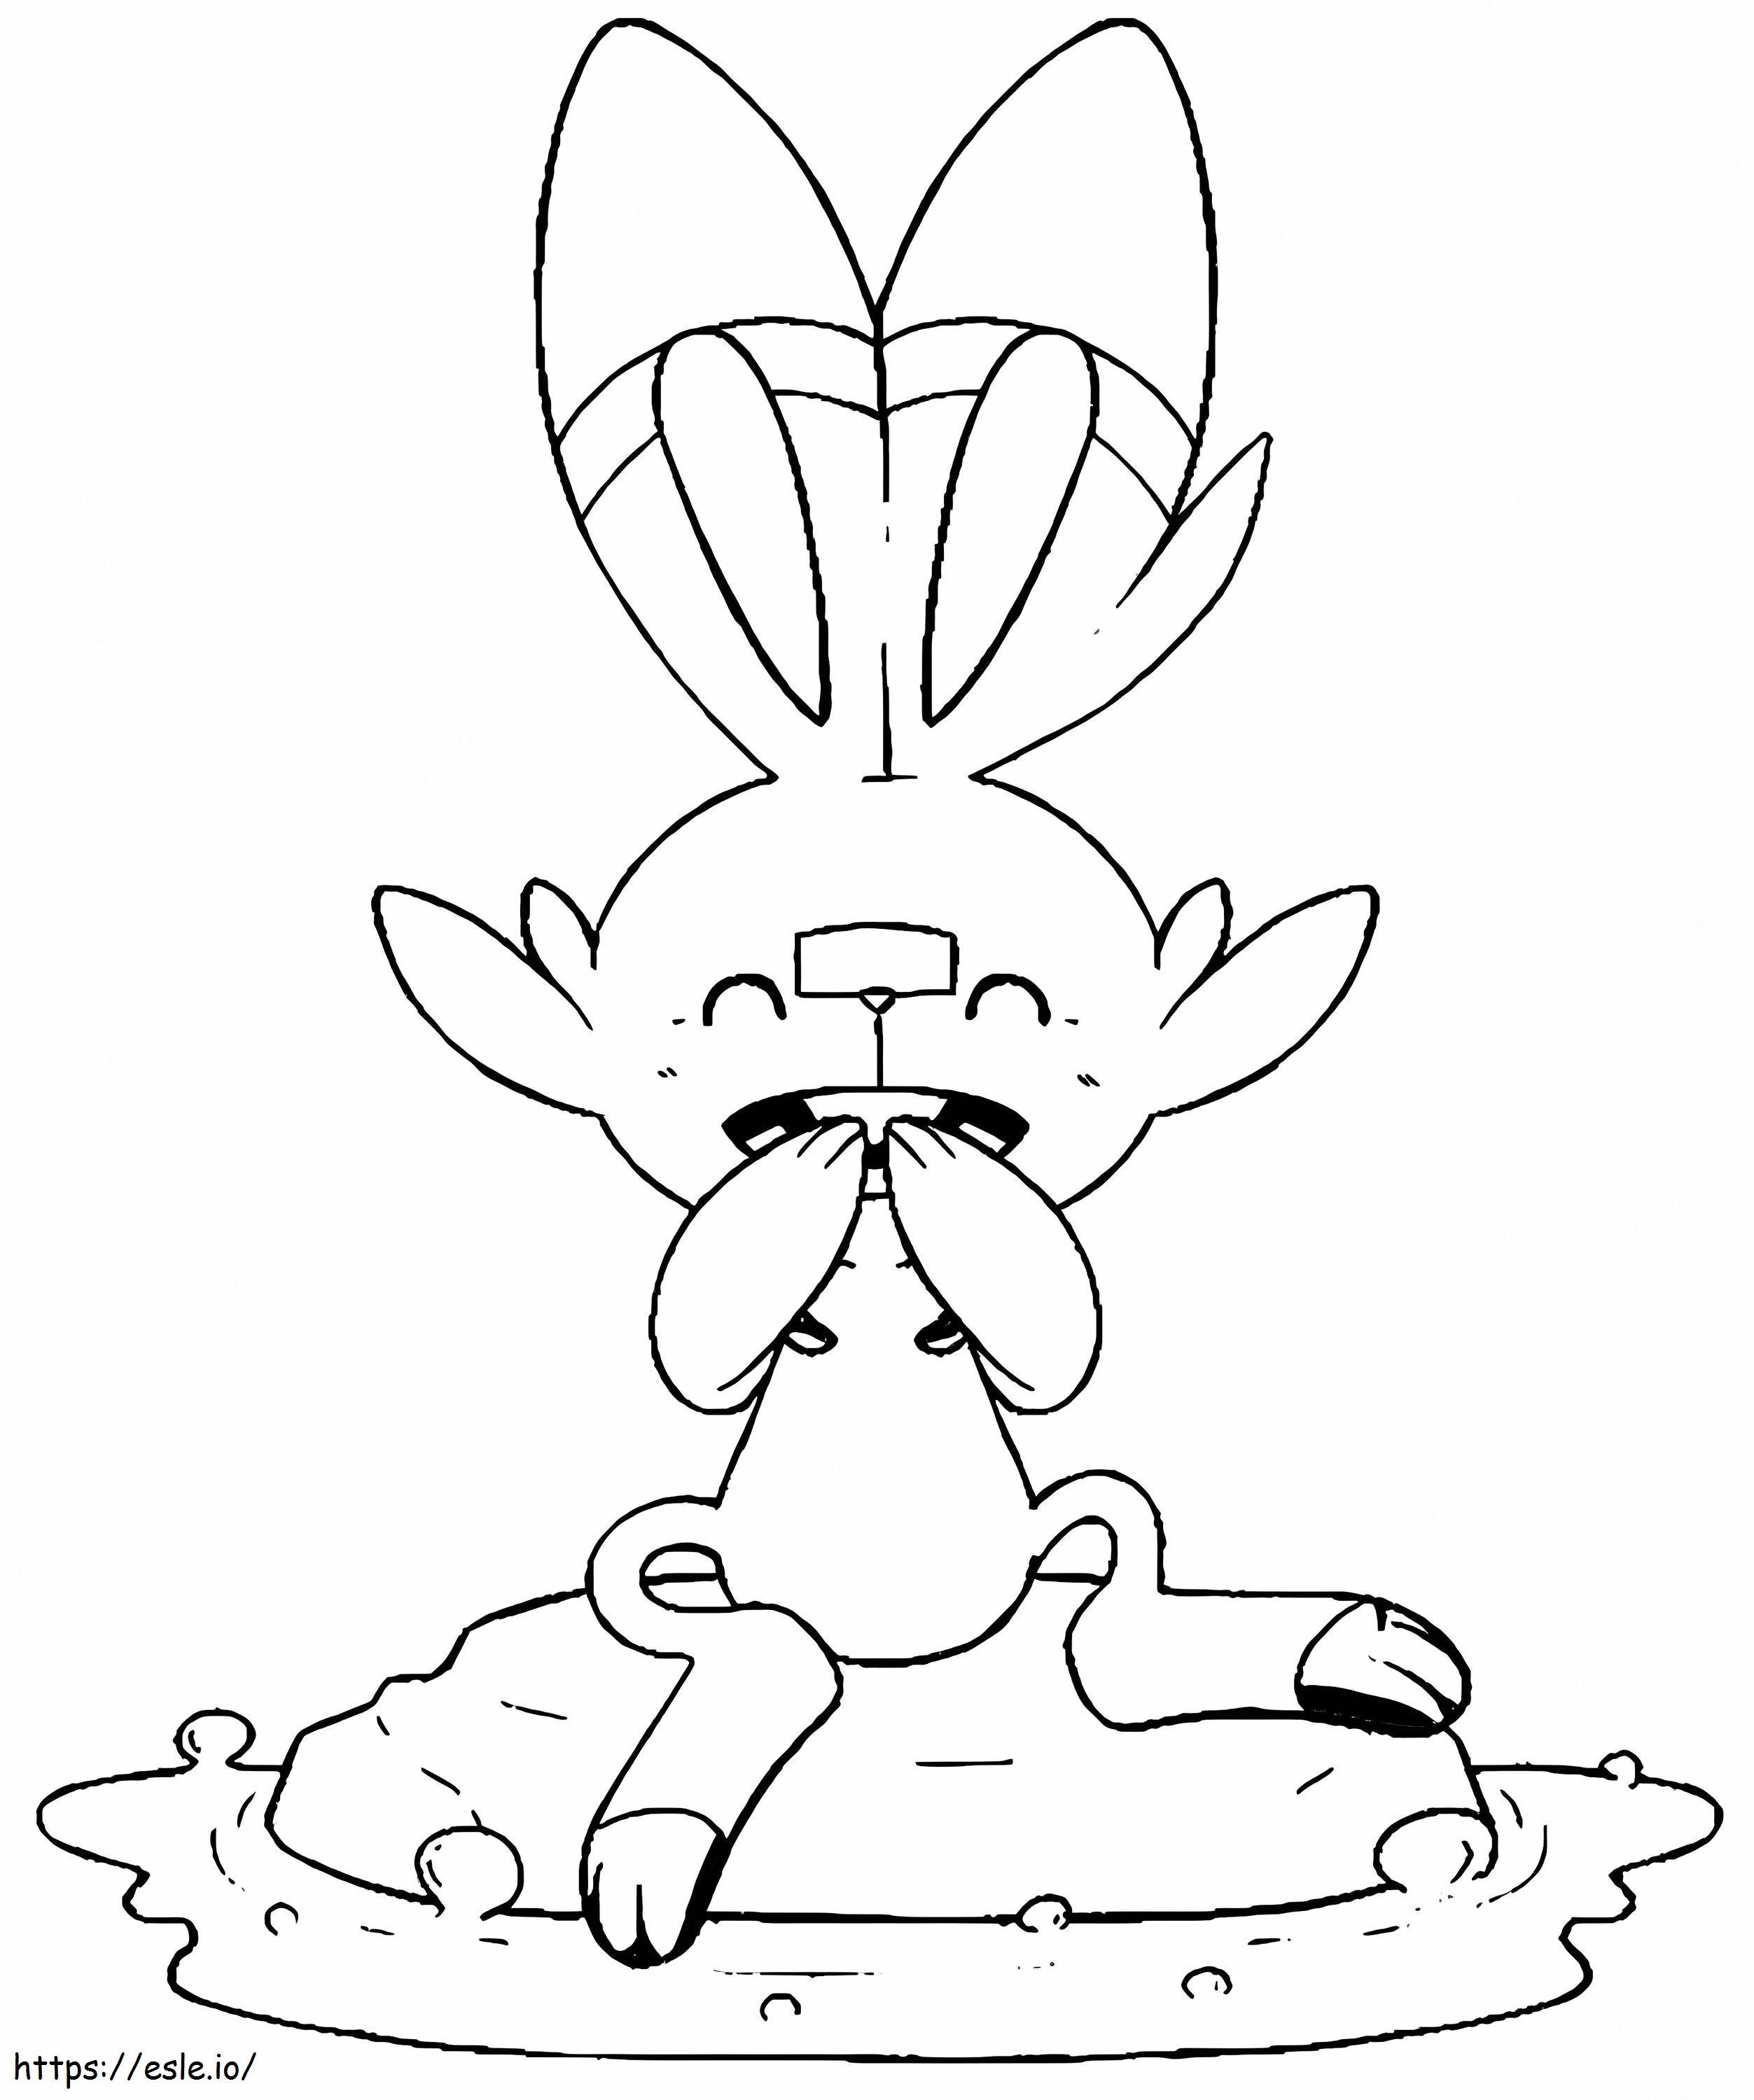 Coloriage Joyeux lapin Scorbunny à imprimer dessin